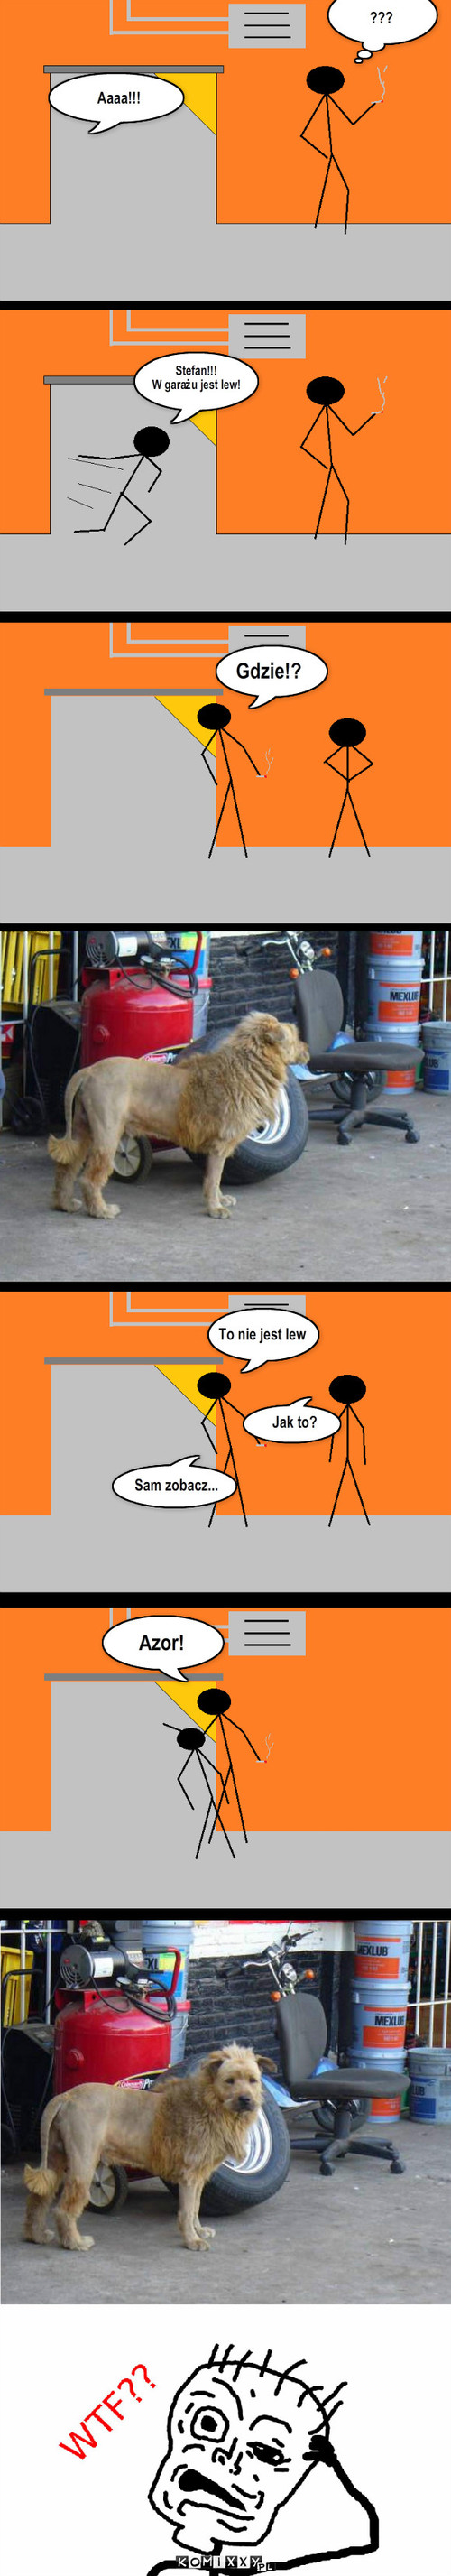 Lew w garażu – Aaaa!!! ??? Stefan!!!
W garażu jest lew! Gdzie!? To nie jest lew Sam zobacz... Jak to? Azor! 